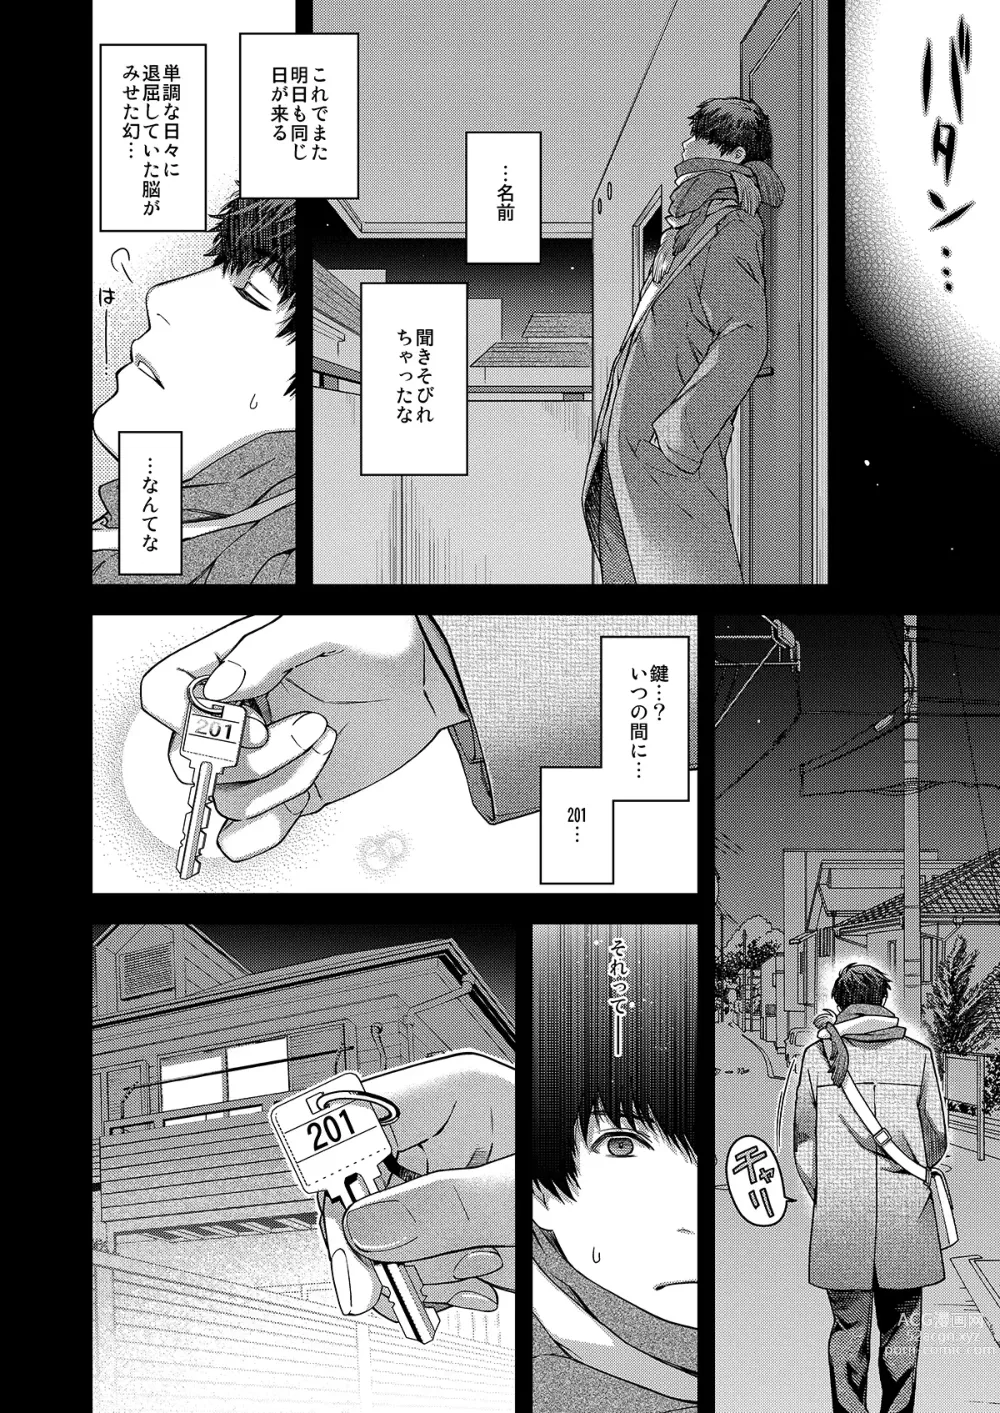 Page 25 of doujinshi Aikagi no Kemono 1